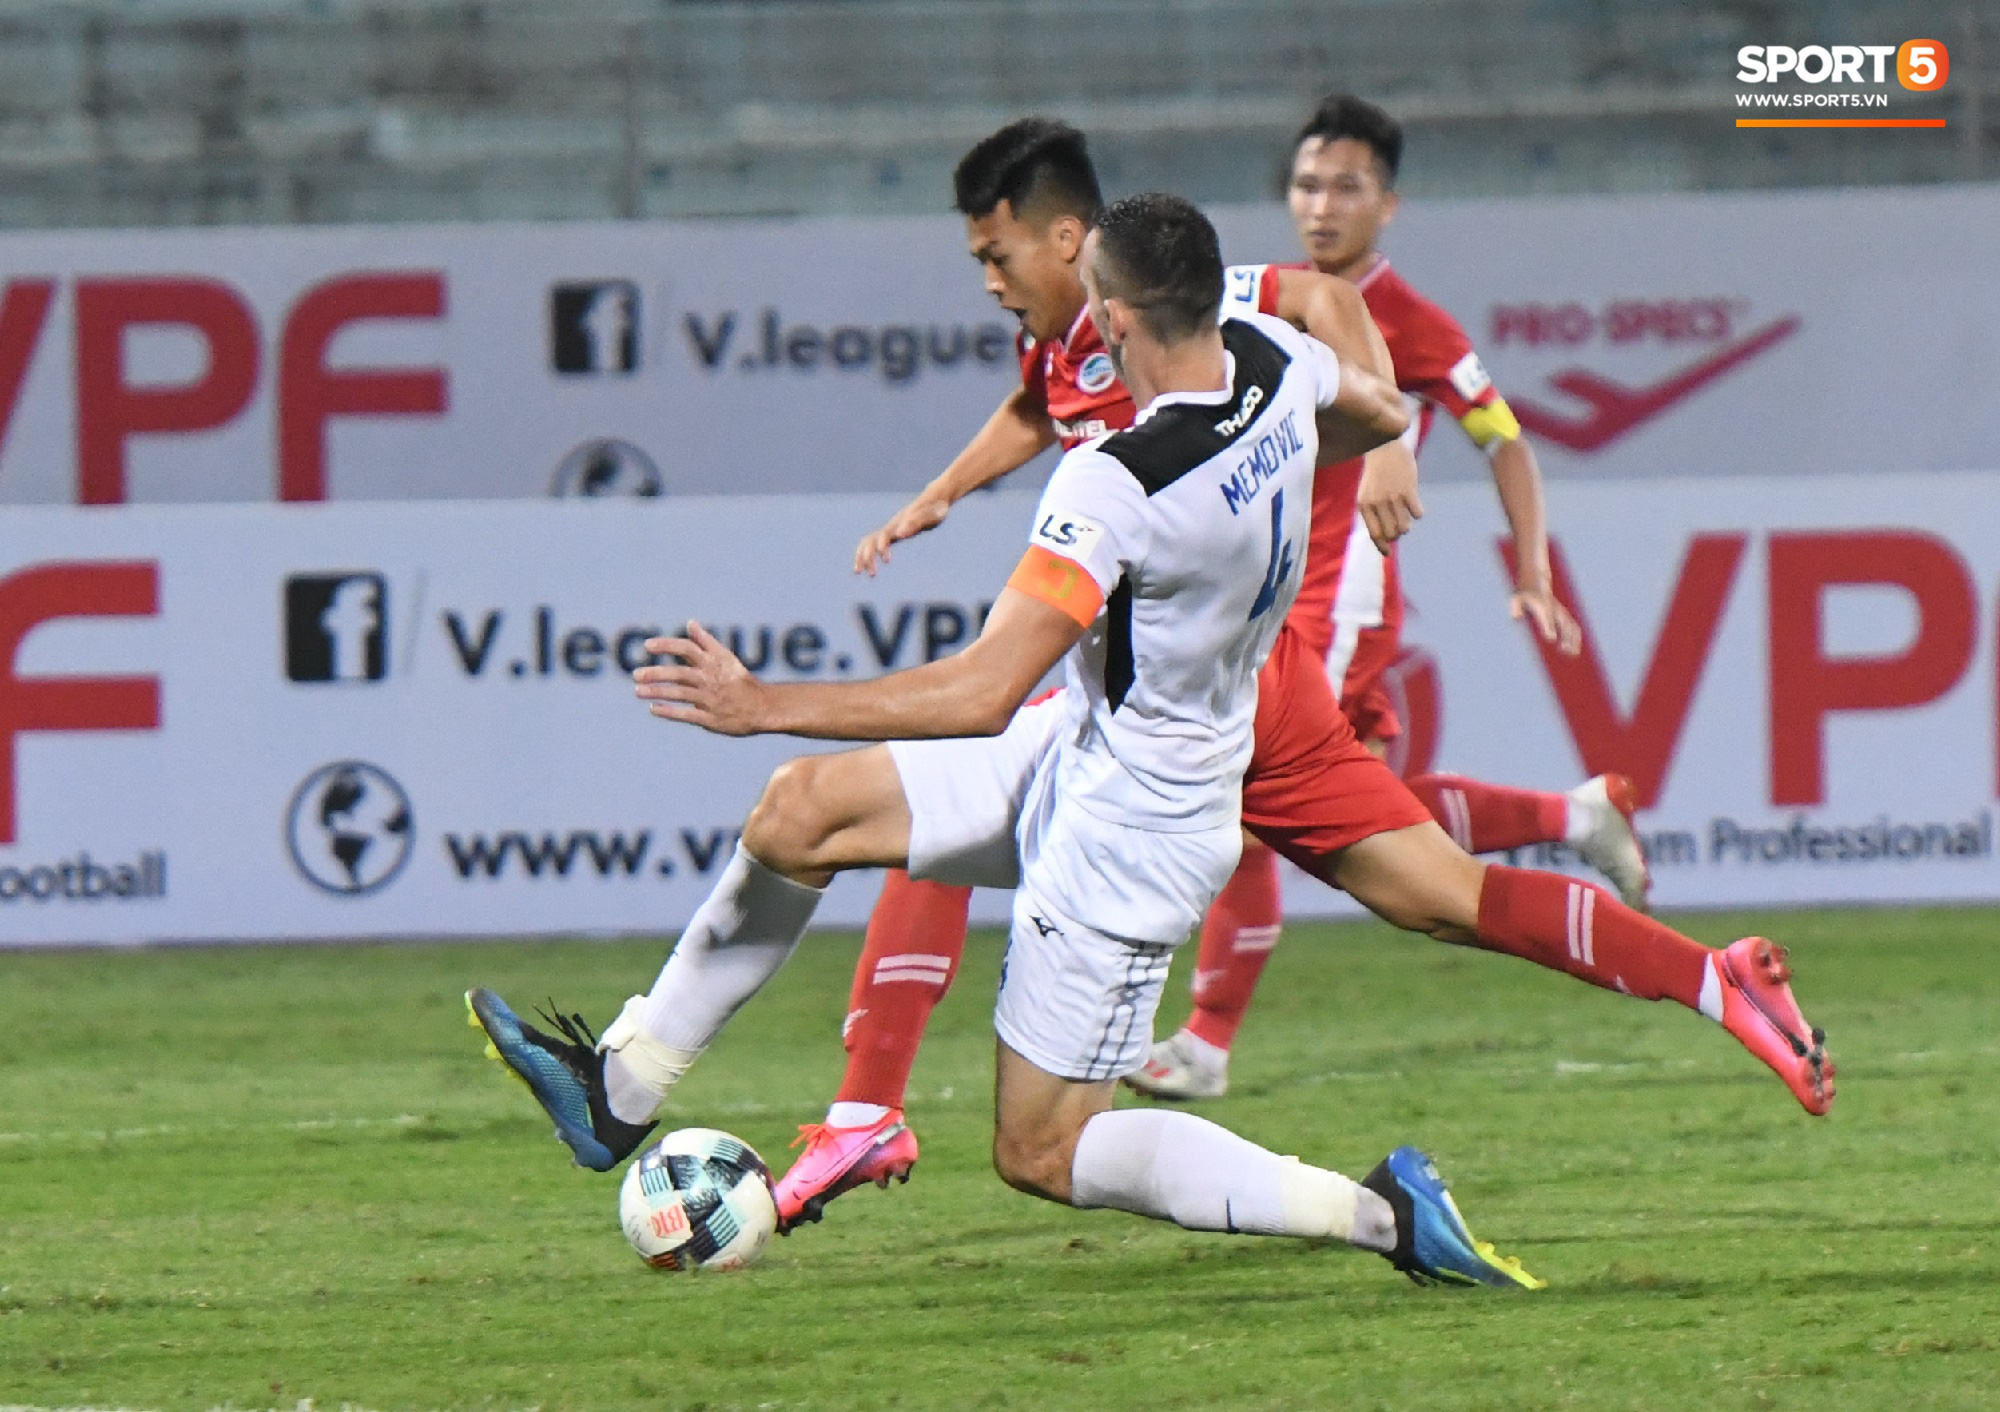 Cựu tuyển thủ U20 hồi sinh thần kỳ 2 năm sau chấn thương kinh hoàng nhất nhì bóng đá Việt, ghi điểm mạnh với trợ lý Lee Young-jin   - Ảnh 4.